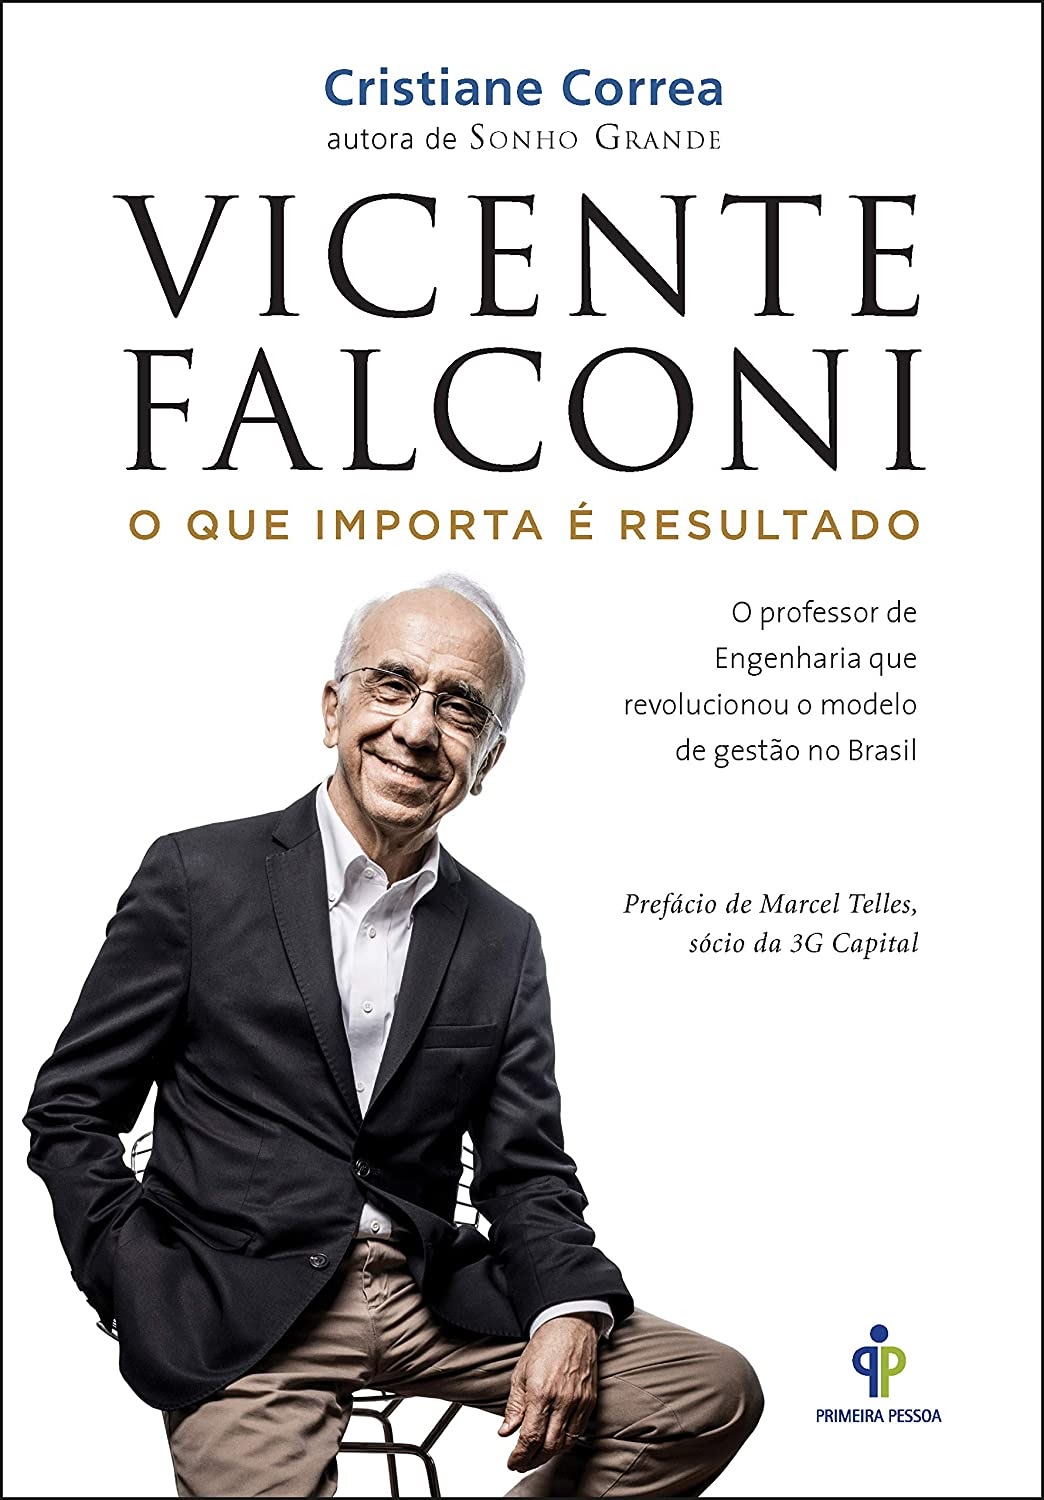 Das Buch „Vicente Falconi”